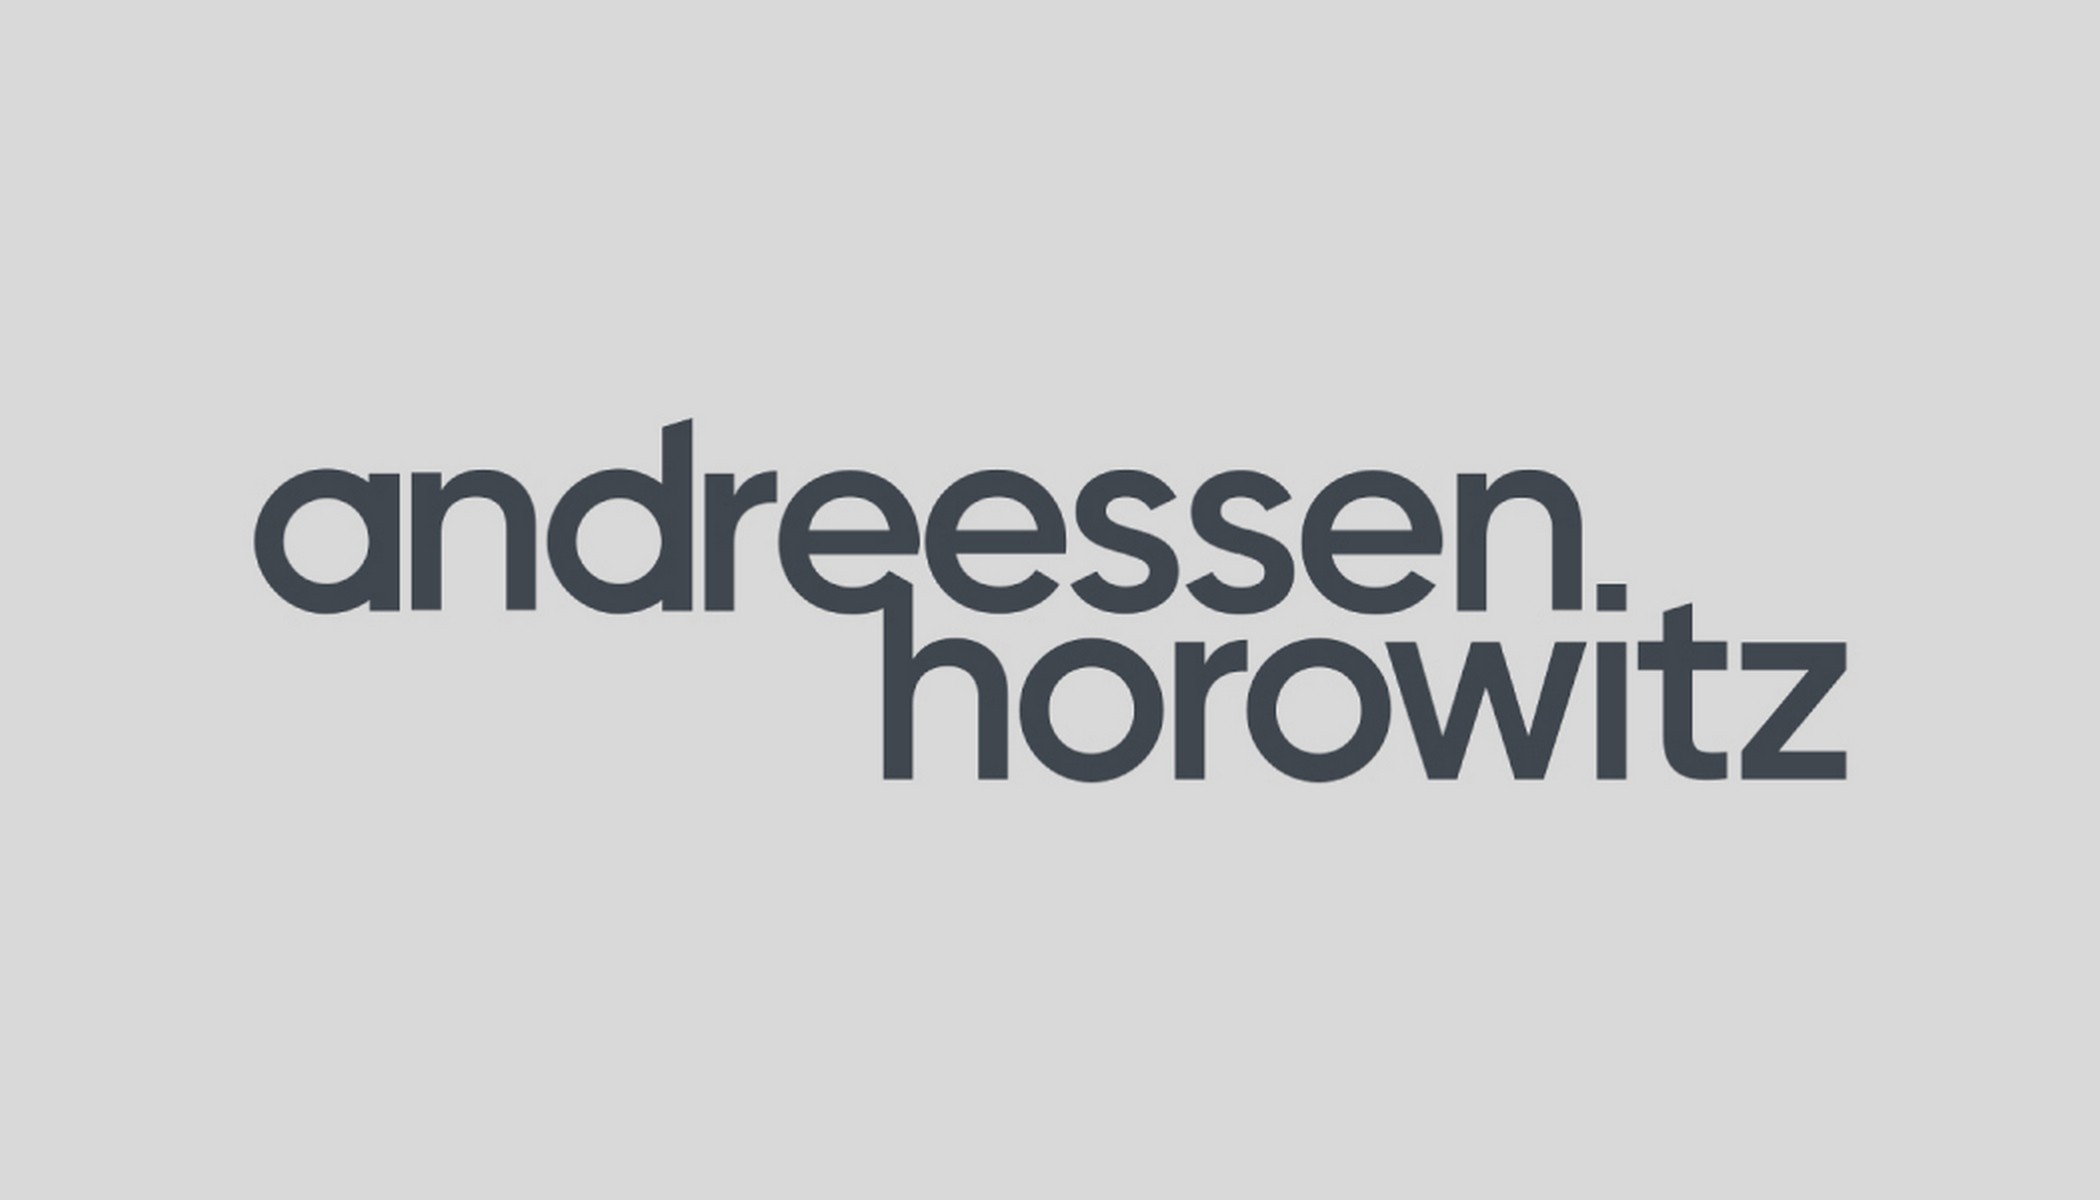 Andreessen Horowitz logo graphic